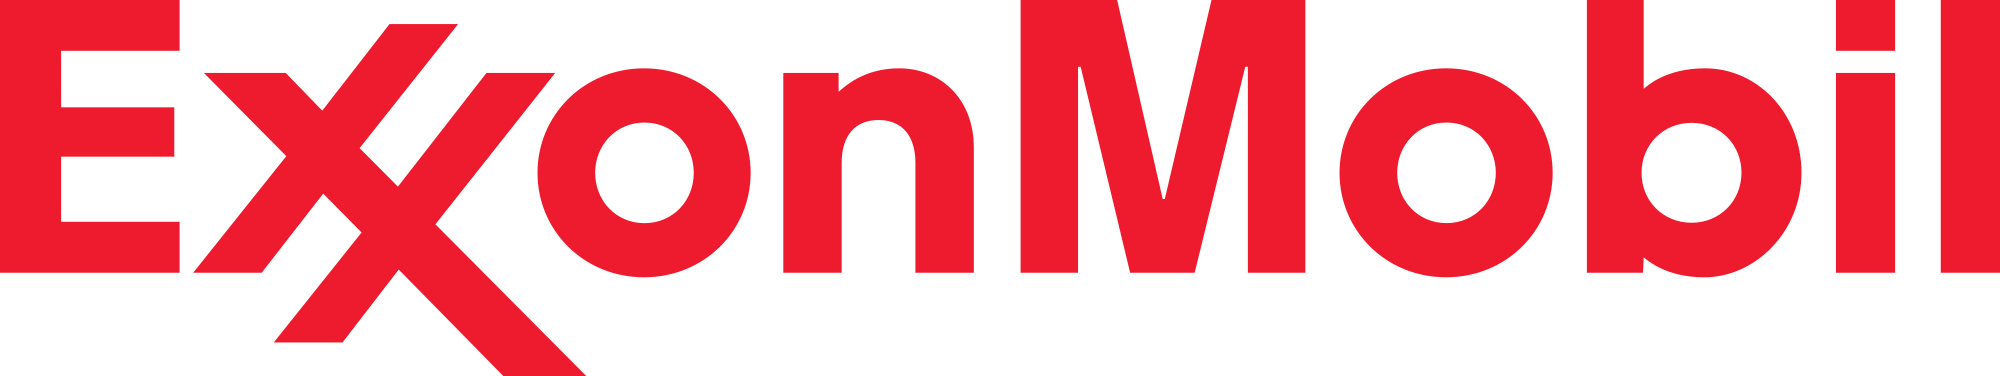 2000px-Exxon_Mobil_Logo.svg